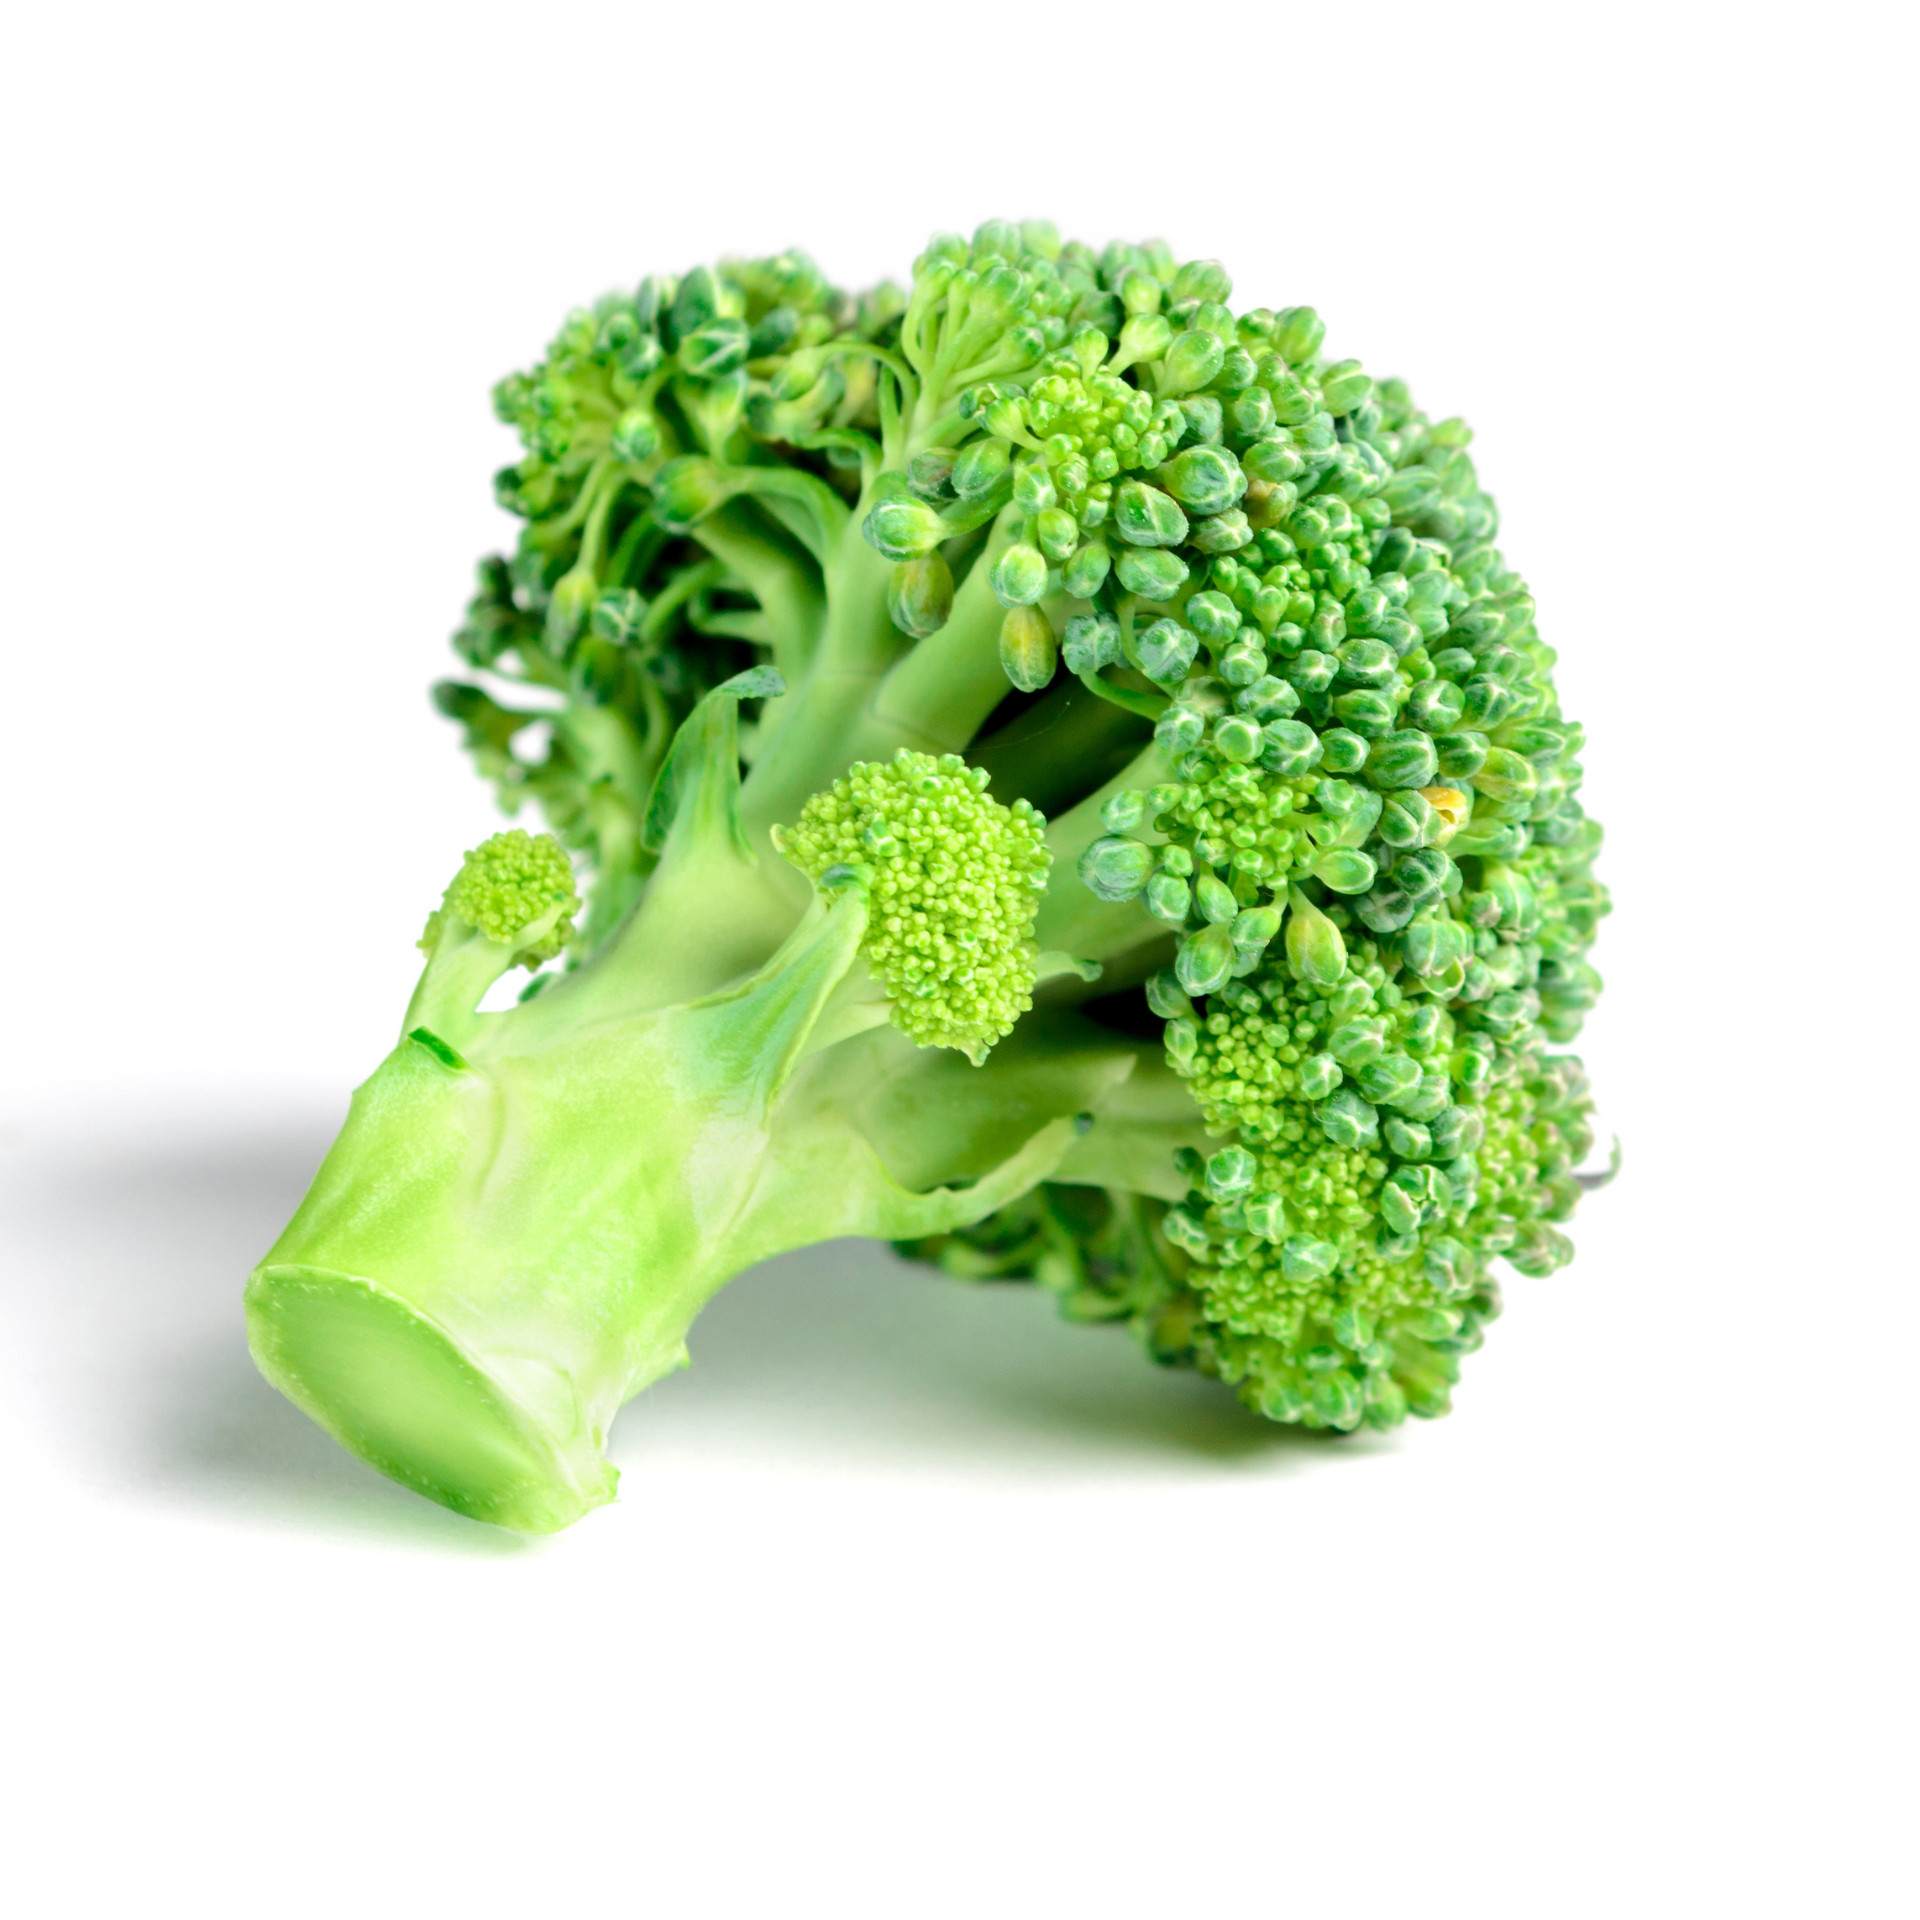 Färsk broccoli till salu bästa pris och kvalitet, isbergssallad Redo att exportera